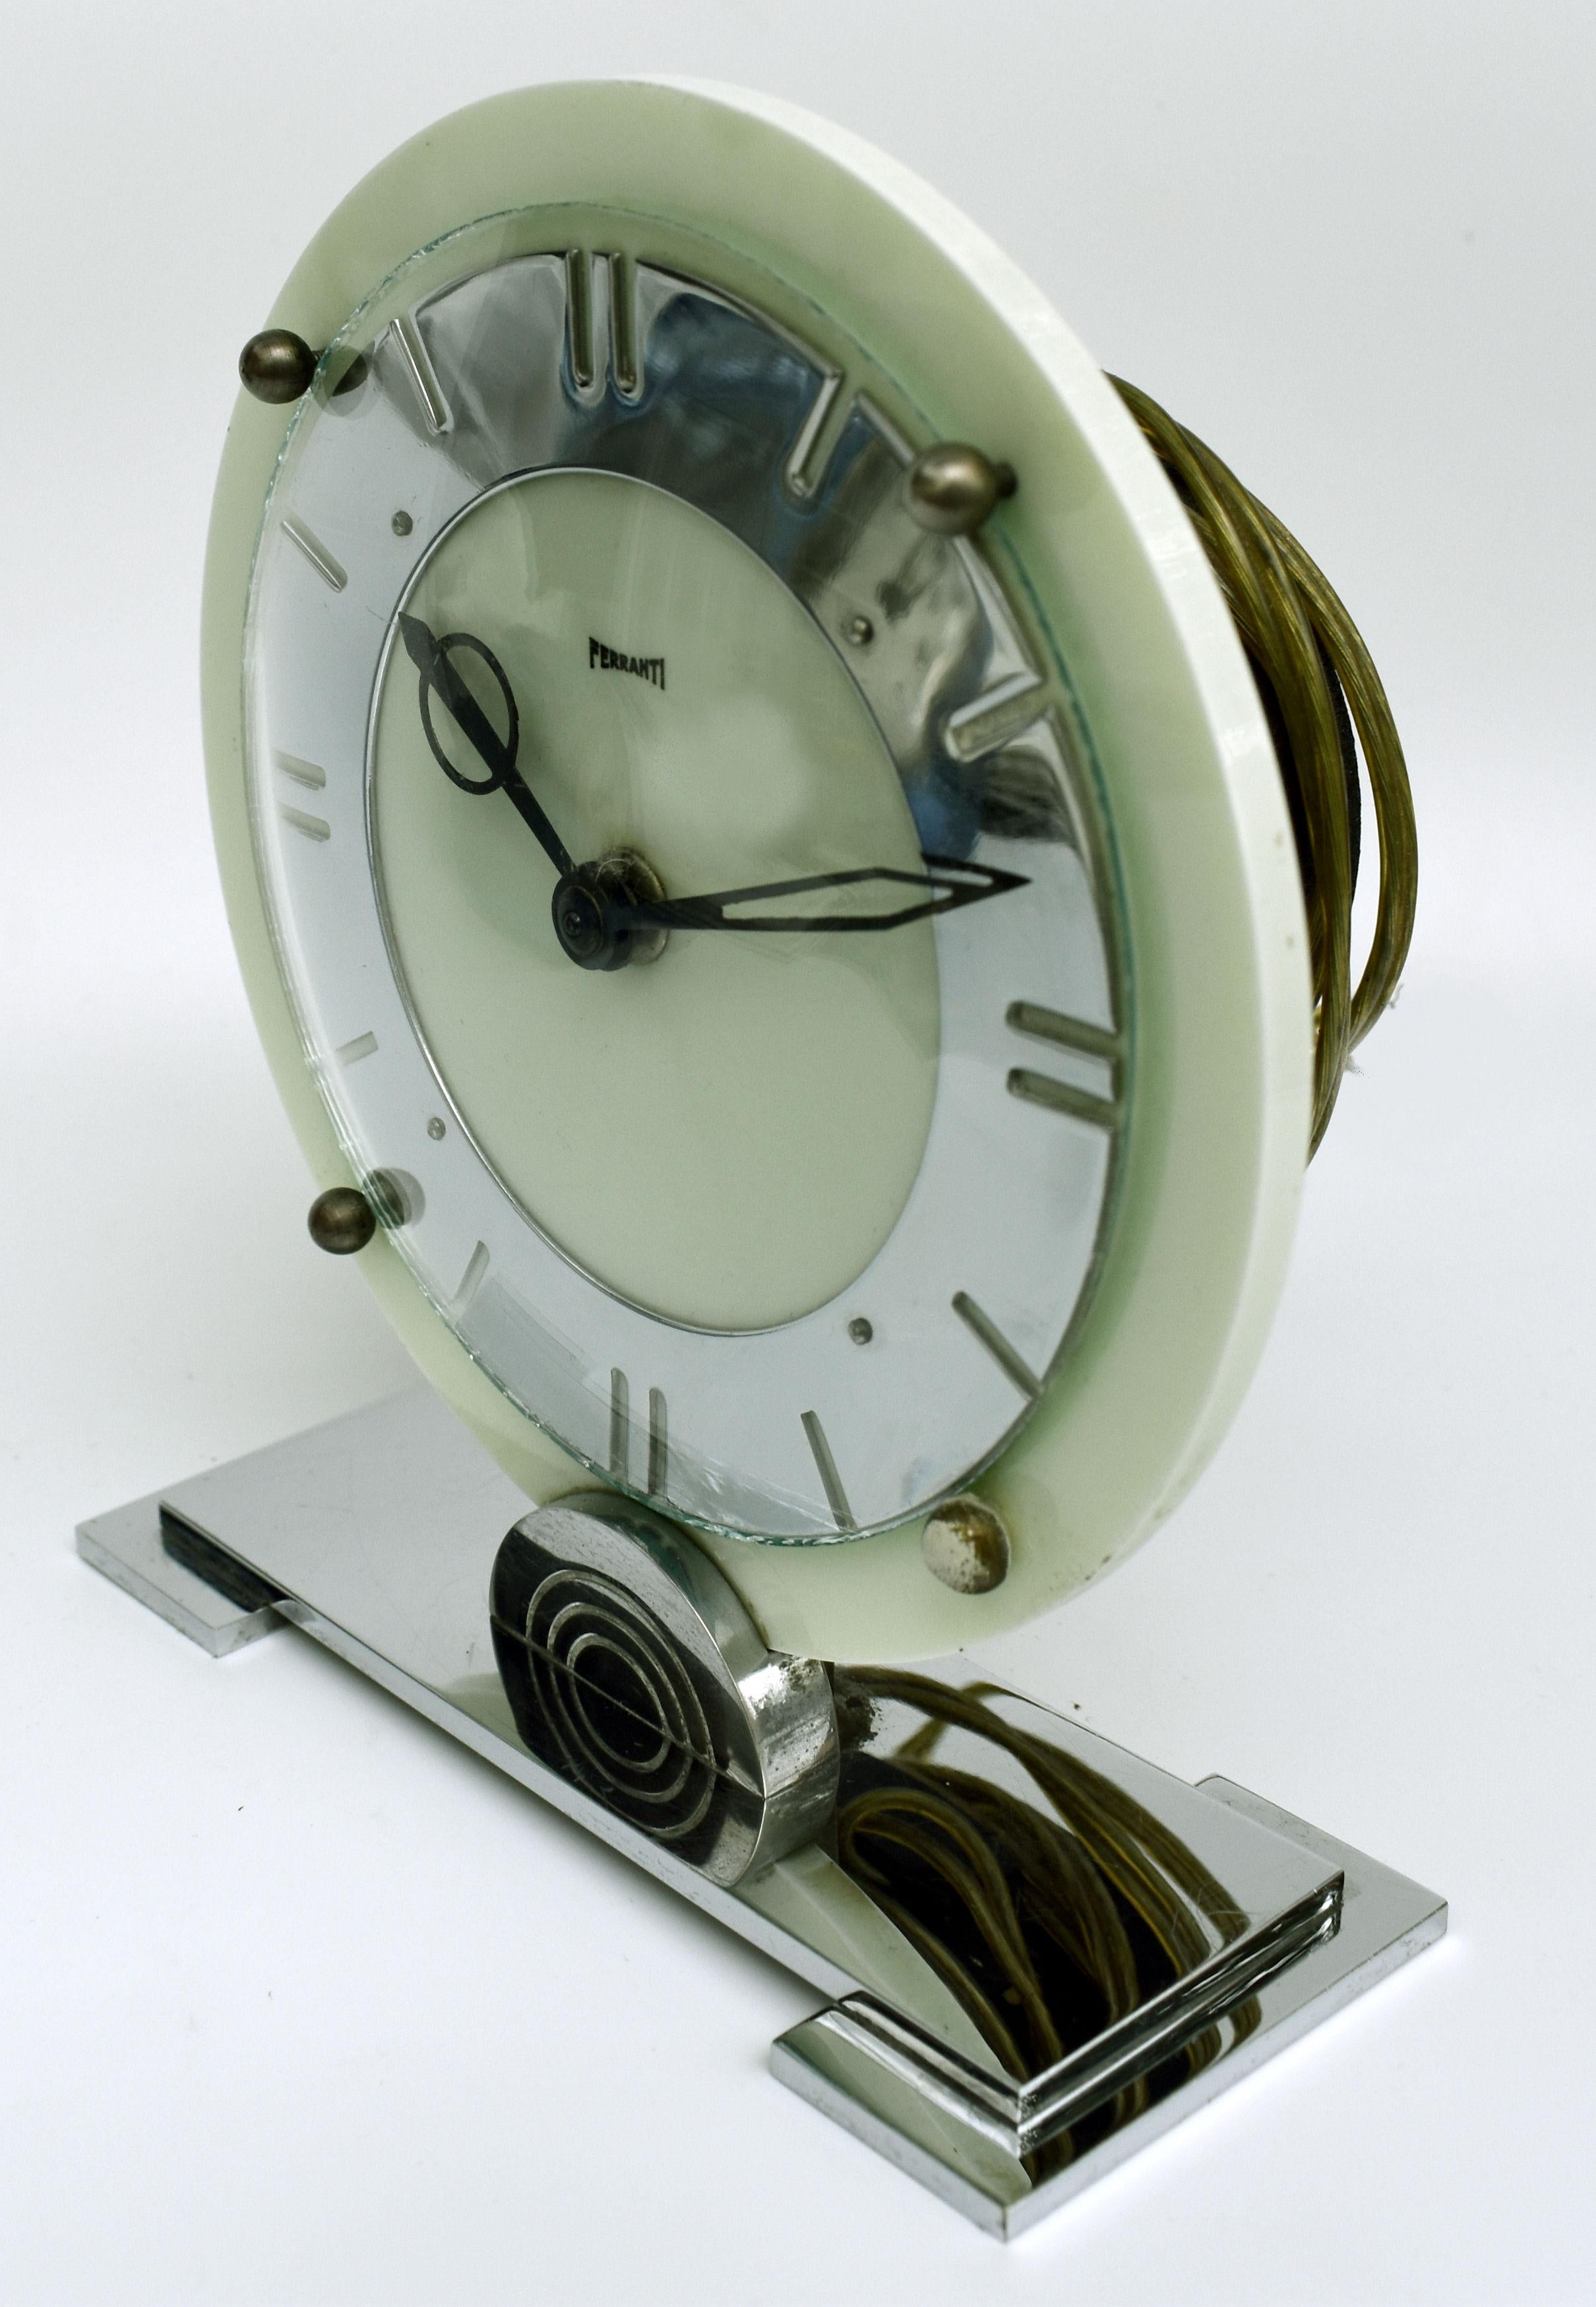 Für Ihre Betrachtung ist diese ziemlich stilvolle frühen Acryl und Chrom Art Deco Uhr. In bemerkenswertem Zustand für ihr Alter ist diese absolut authentische Uhr aus den 1930er Jahren, die aus England stammt. Hergestellt von Ferranti, einem